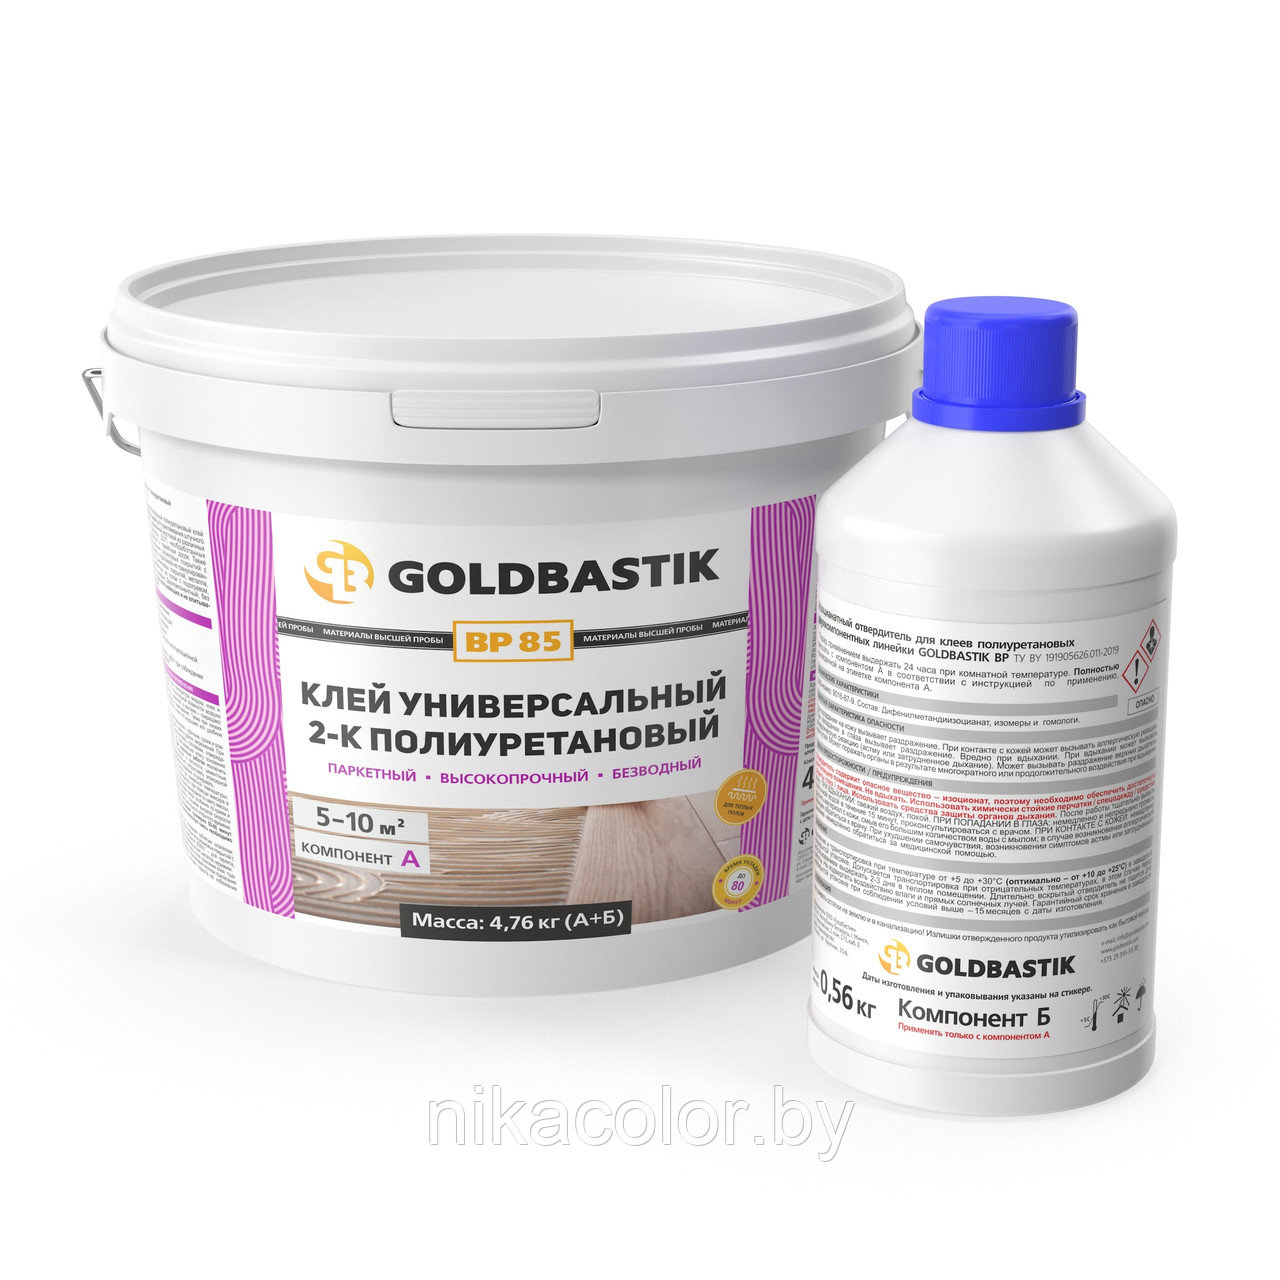 Клей универсальный 2-К полиуретановый GOLDBASTIK BP 85 для впитывающих и невпитывающих оснований 4,76 кг